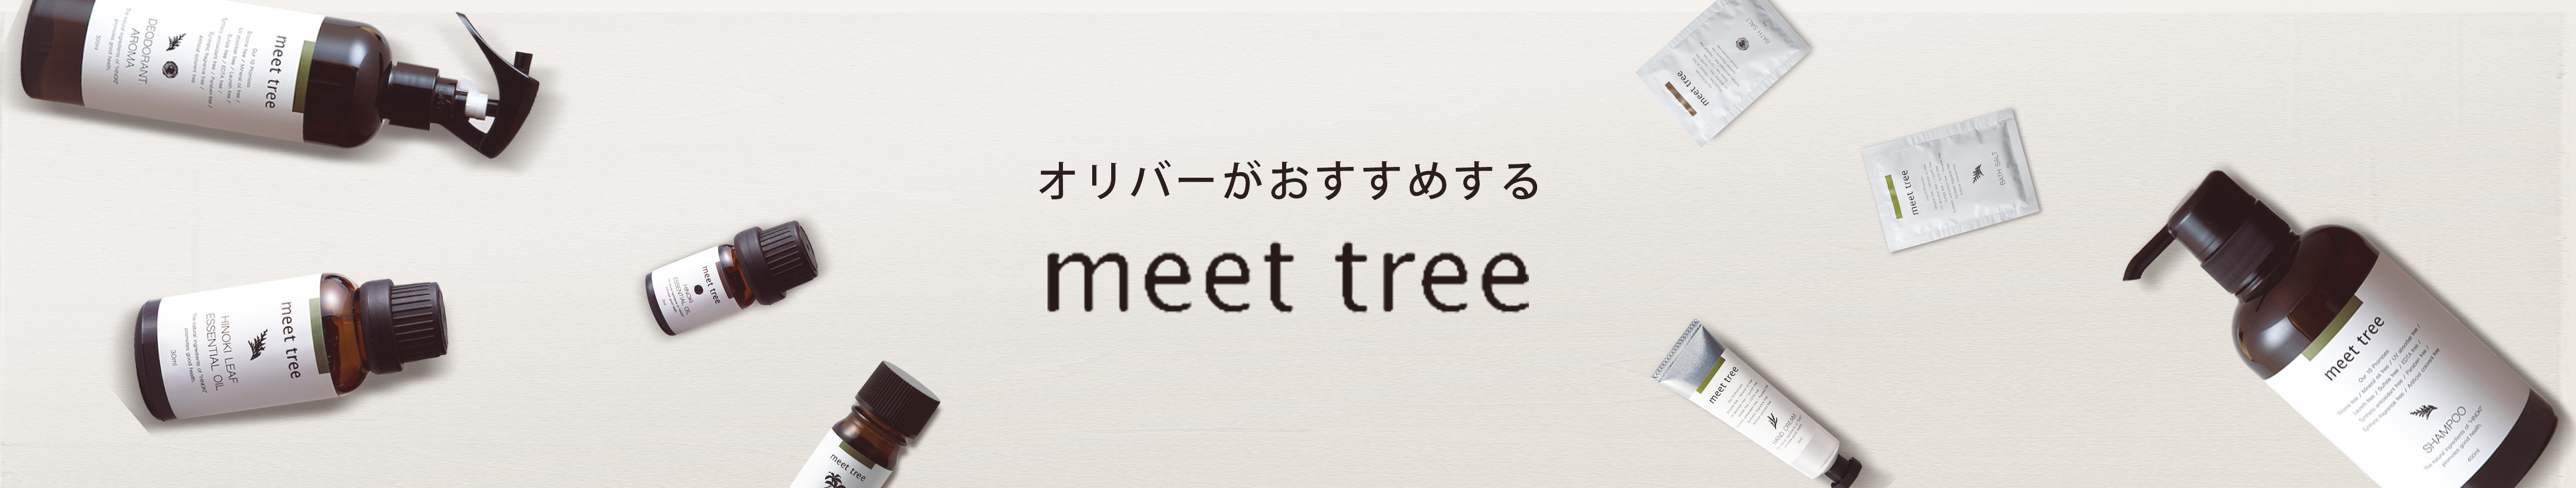 オリバーがおすすめする meet tree